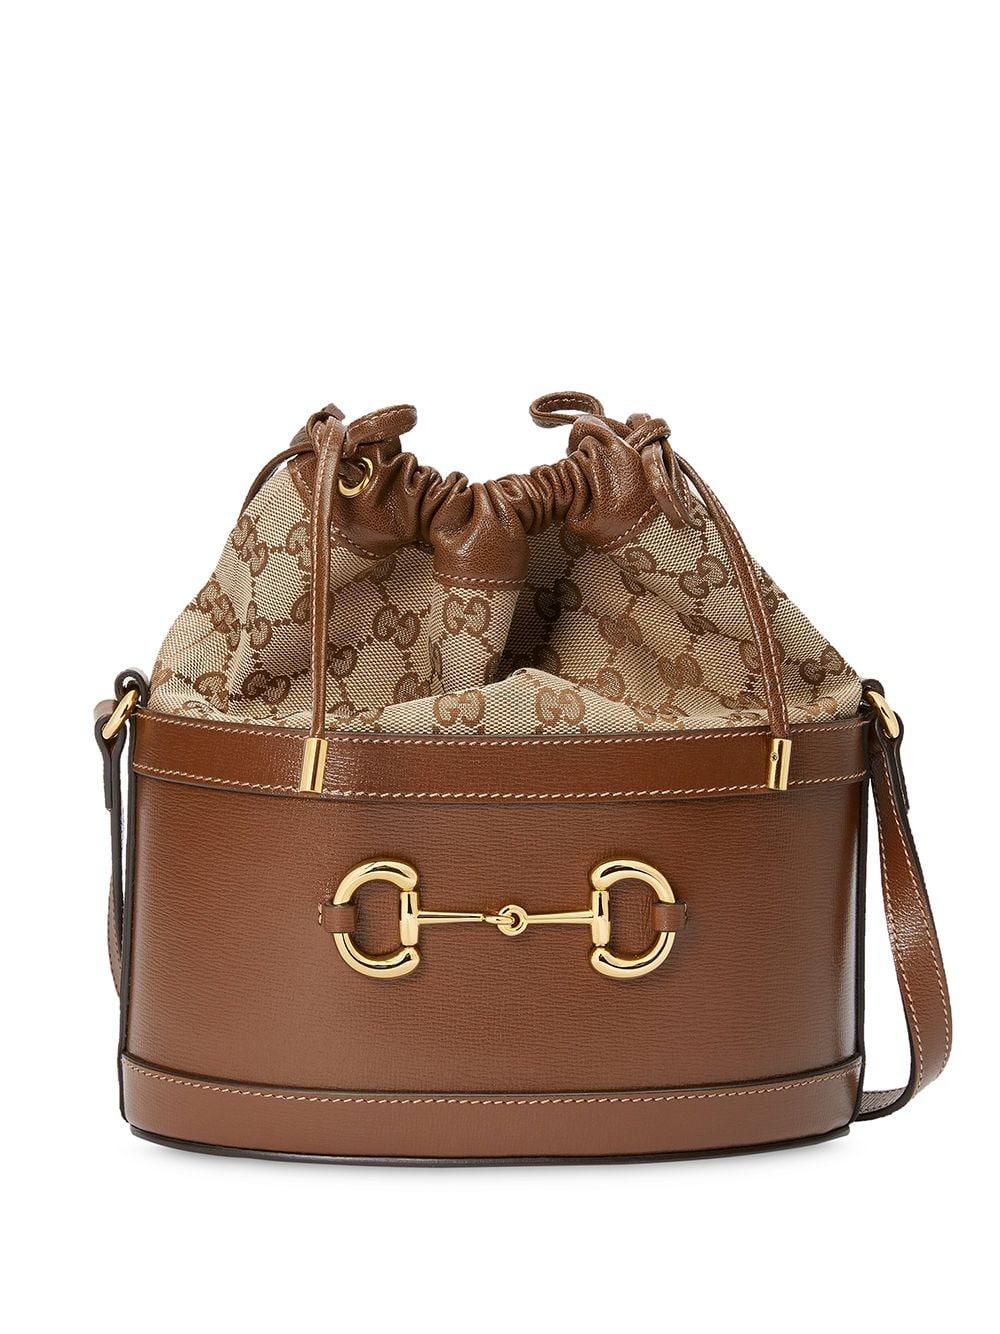 Gucci Horsebit 1955 Bucket Bag in Brown | Lyst